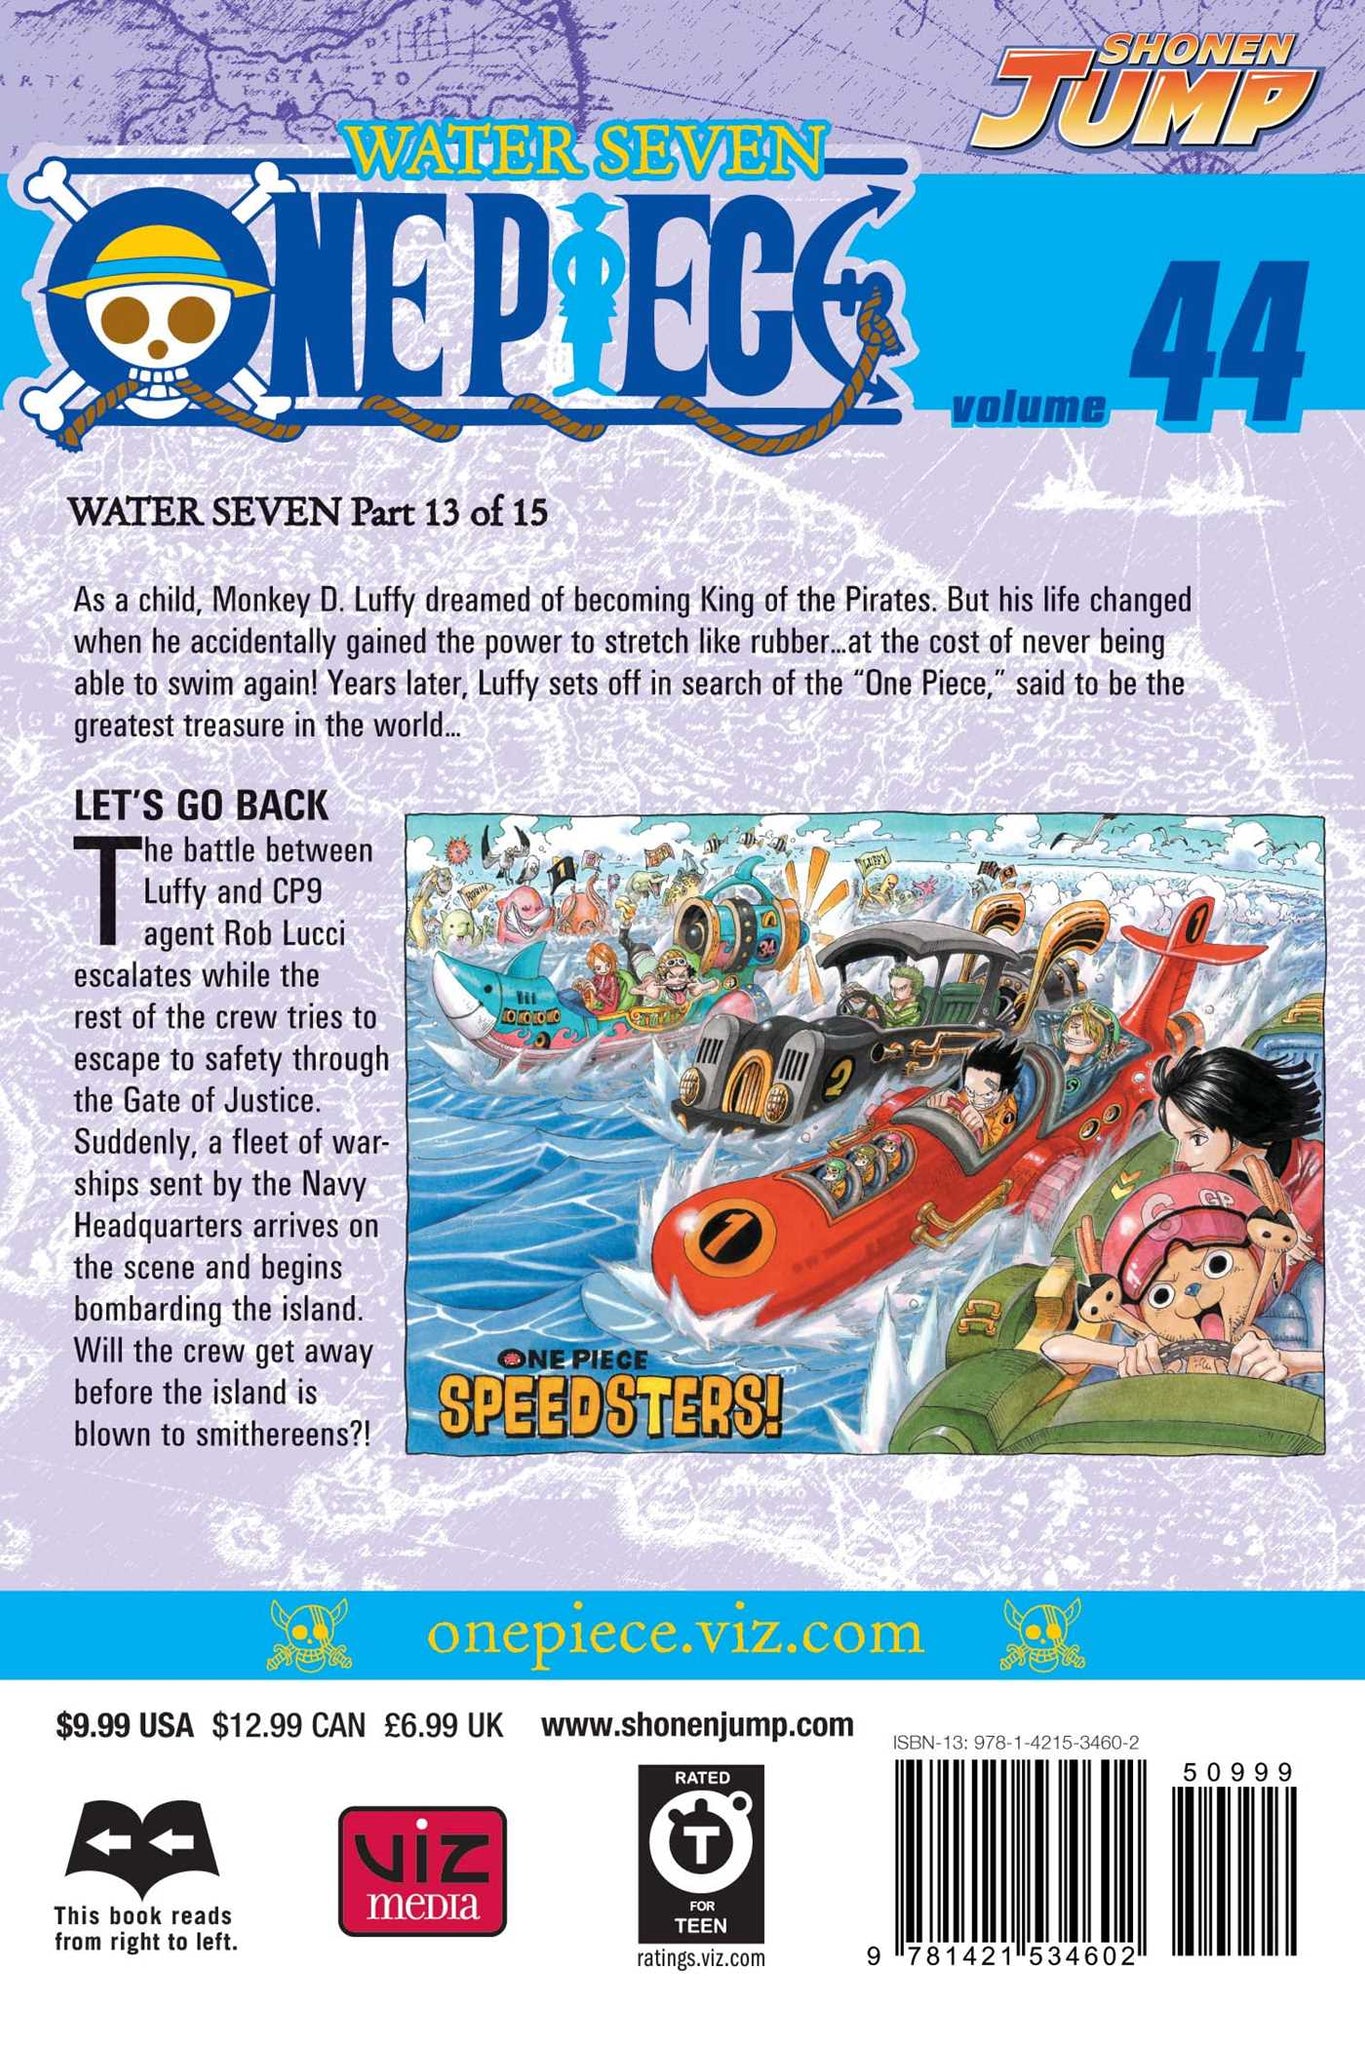 One Piece Volume 44 | Mangamanga Uk Manga Shop – Mangamanga.Co.Uk